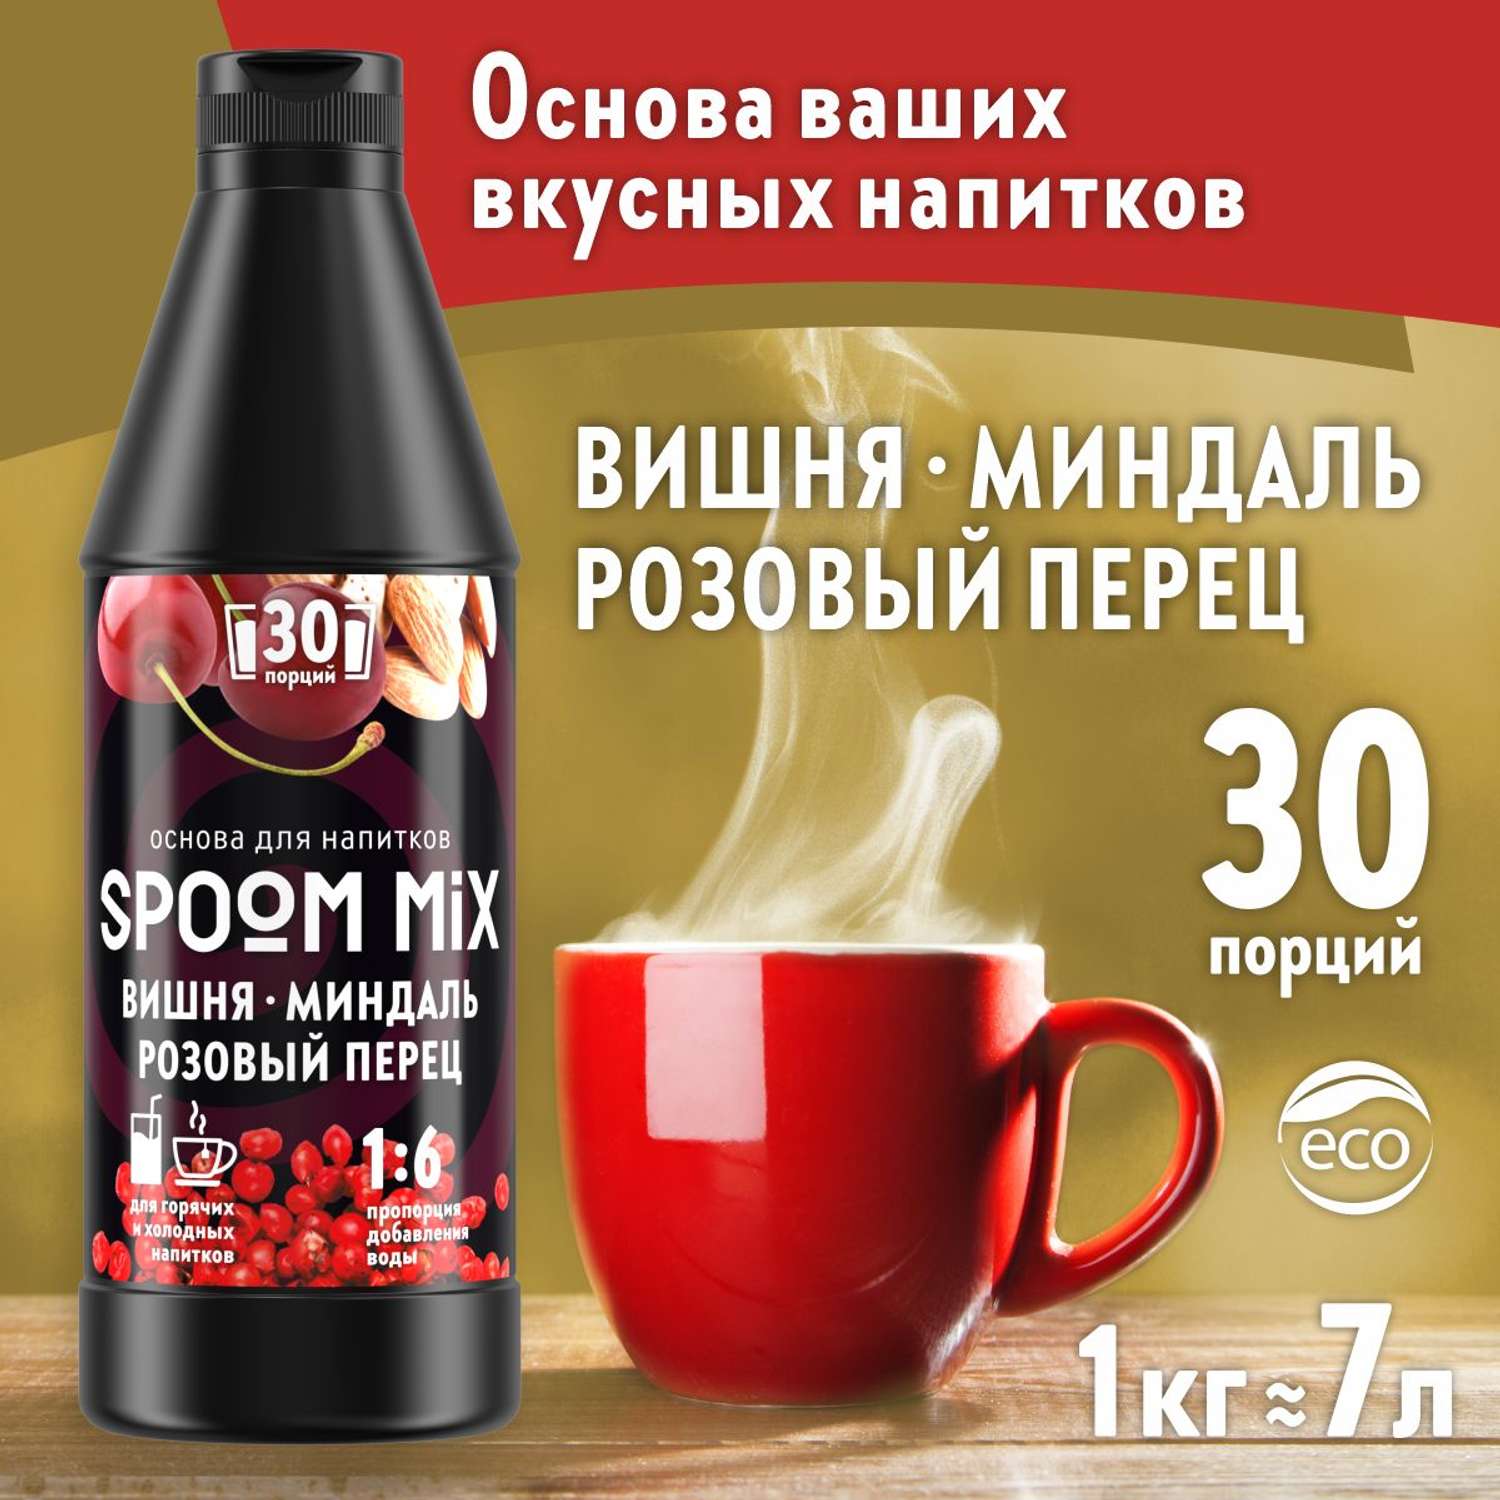 Основа для напитков SPOOM MIX Вишня миндаль розовый перец 1 кг - фото 1